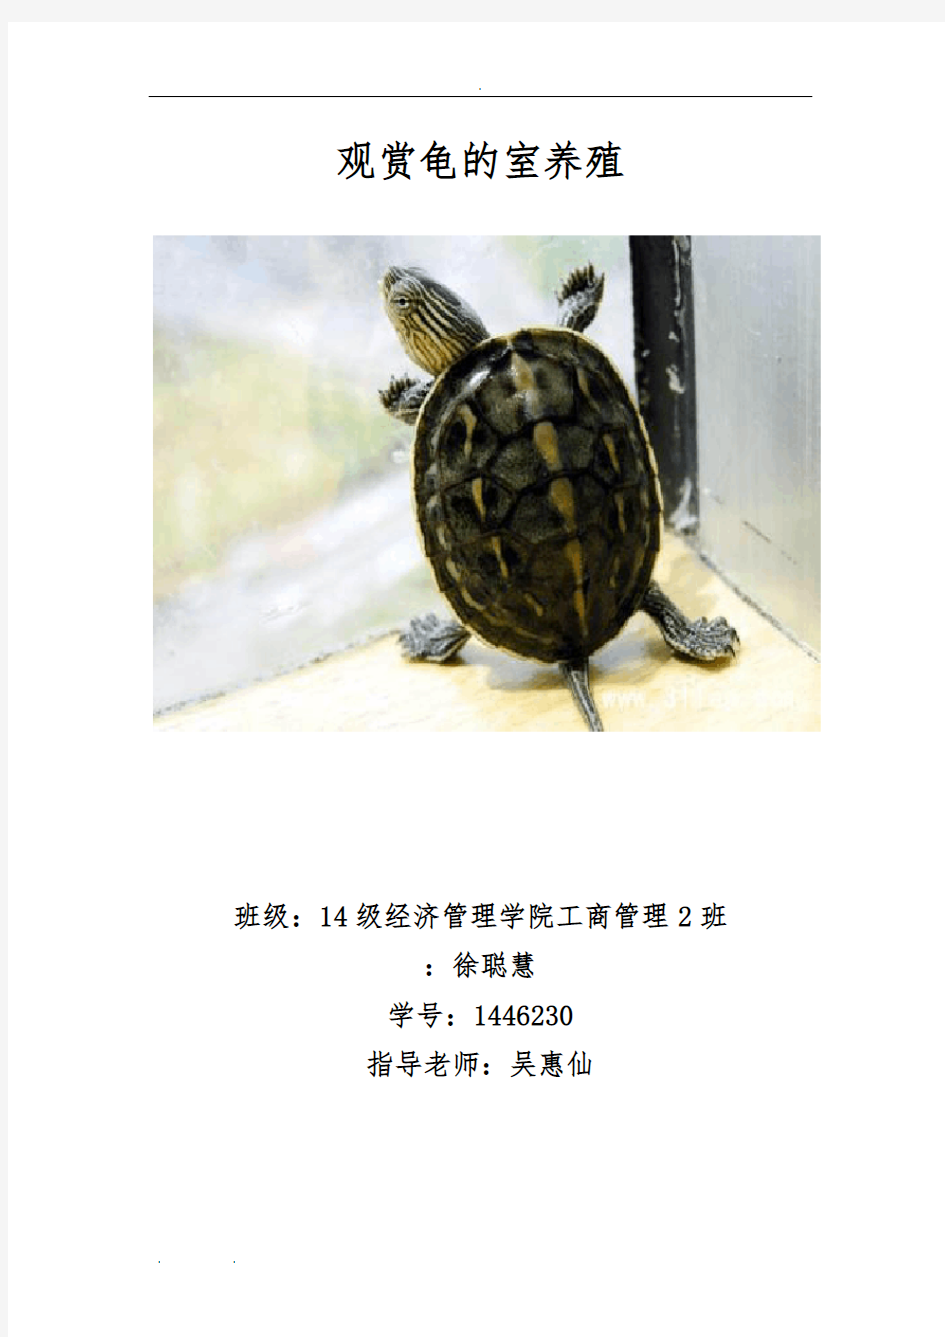 龟鳖文化与龟鳖鉴赏论文。